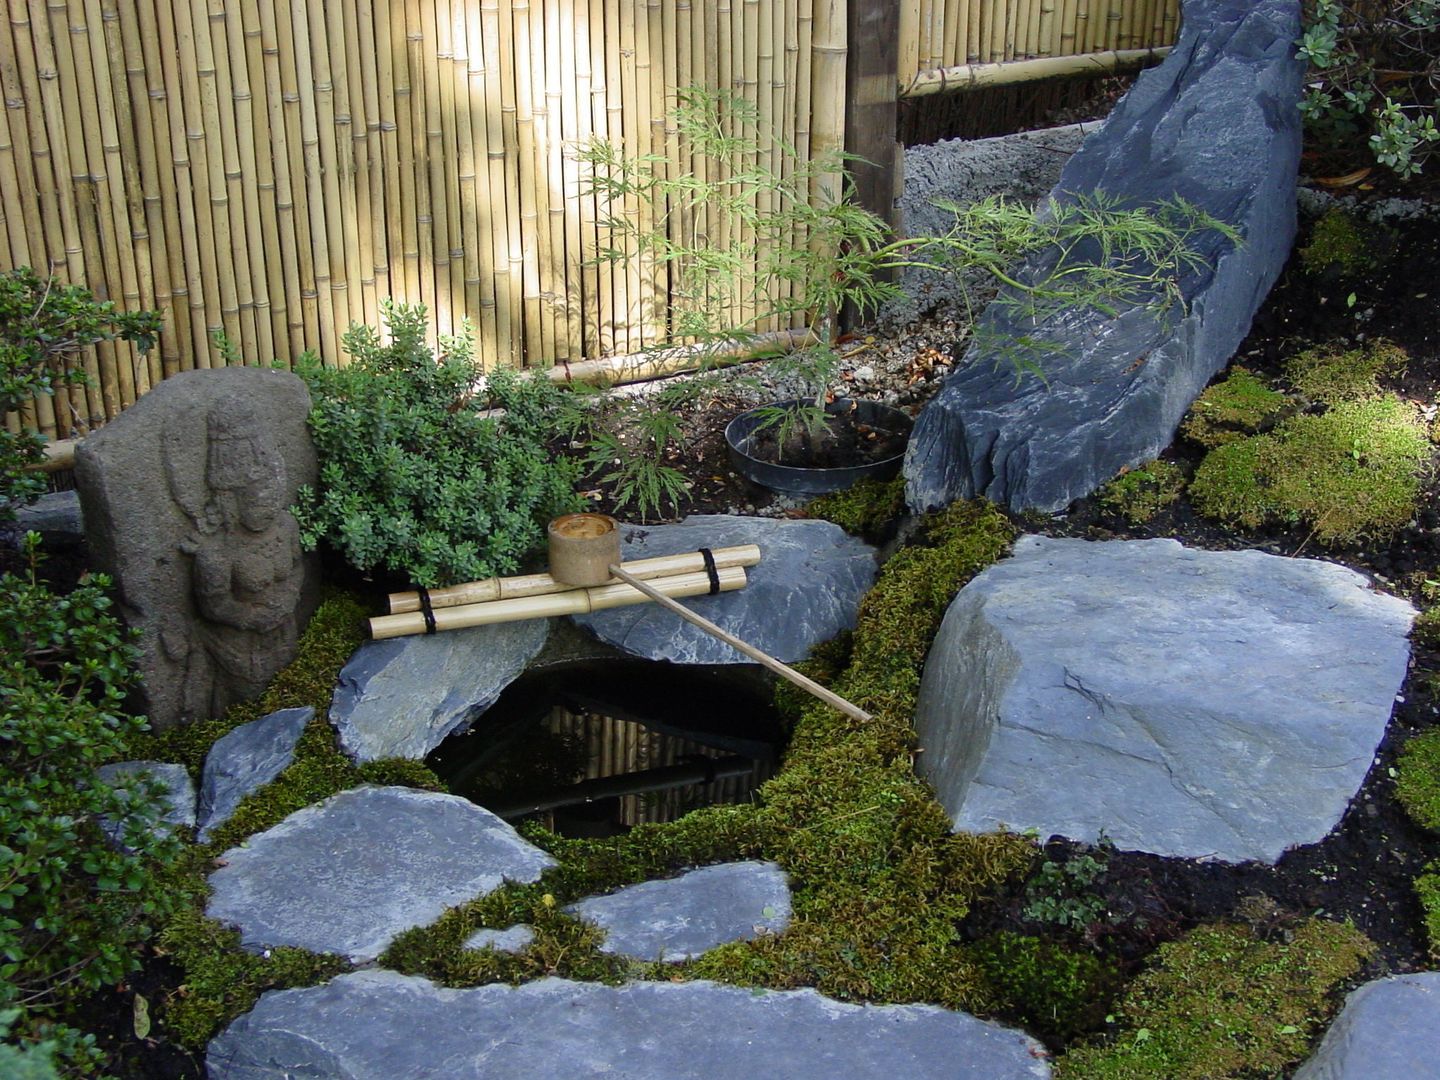 Wasser im Garten, Natur-Teiche, Schwimm-Teiche, Wasserfälle, Bachläufe, Tsukubai, japan-garten-kultur japan-garten-kultur Azjatycki ogród